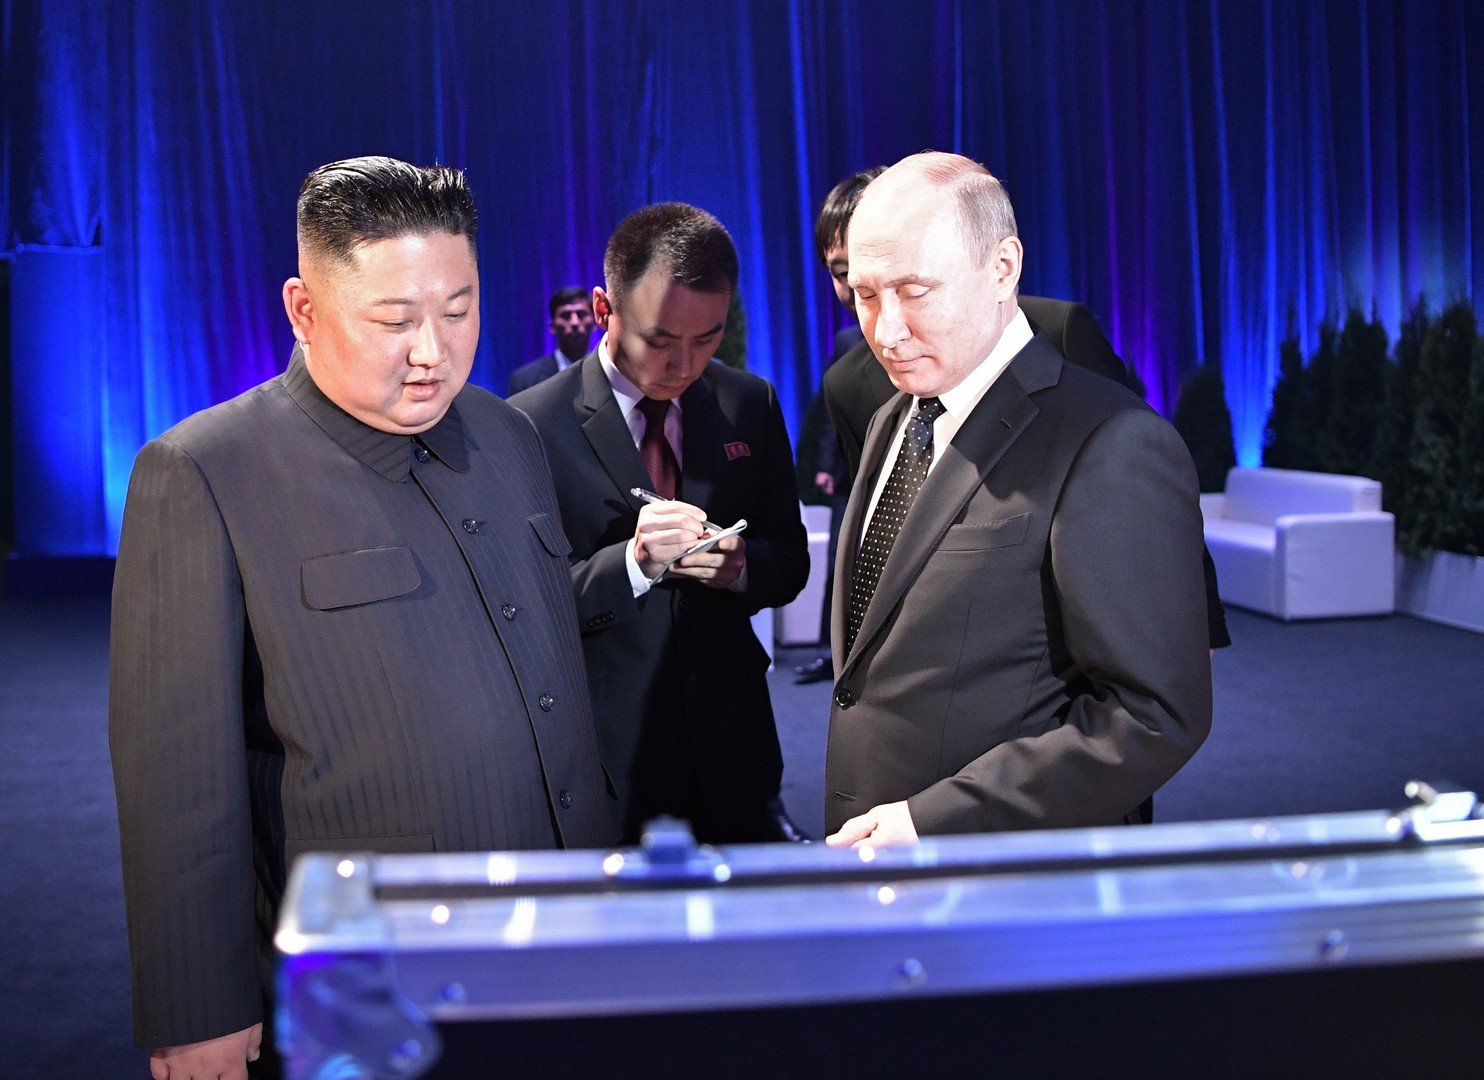 الرئيس الروسي فلاديمير بوتين والزعيم الكوري الشمالي كيم جونغ أون